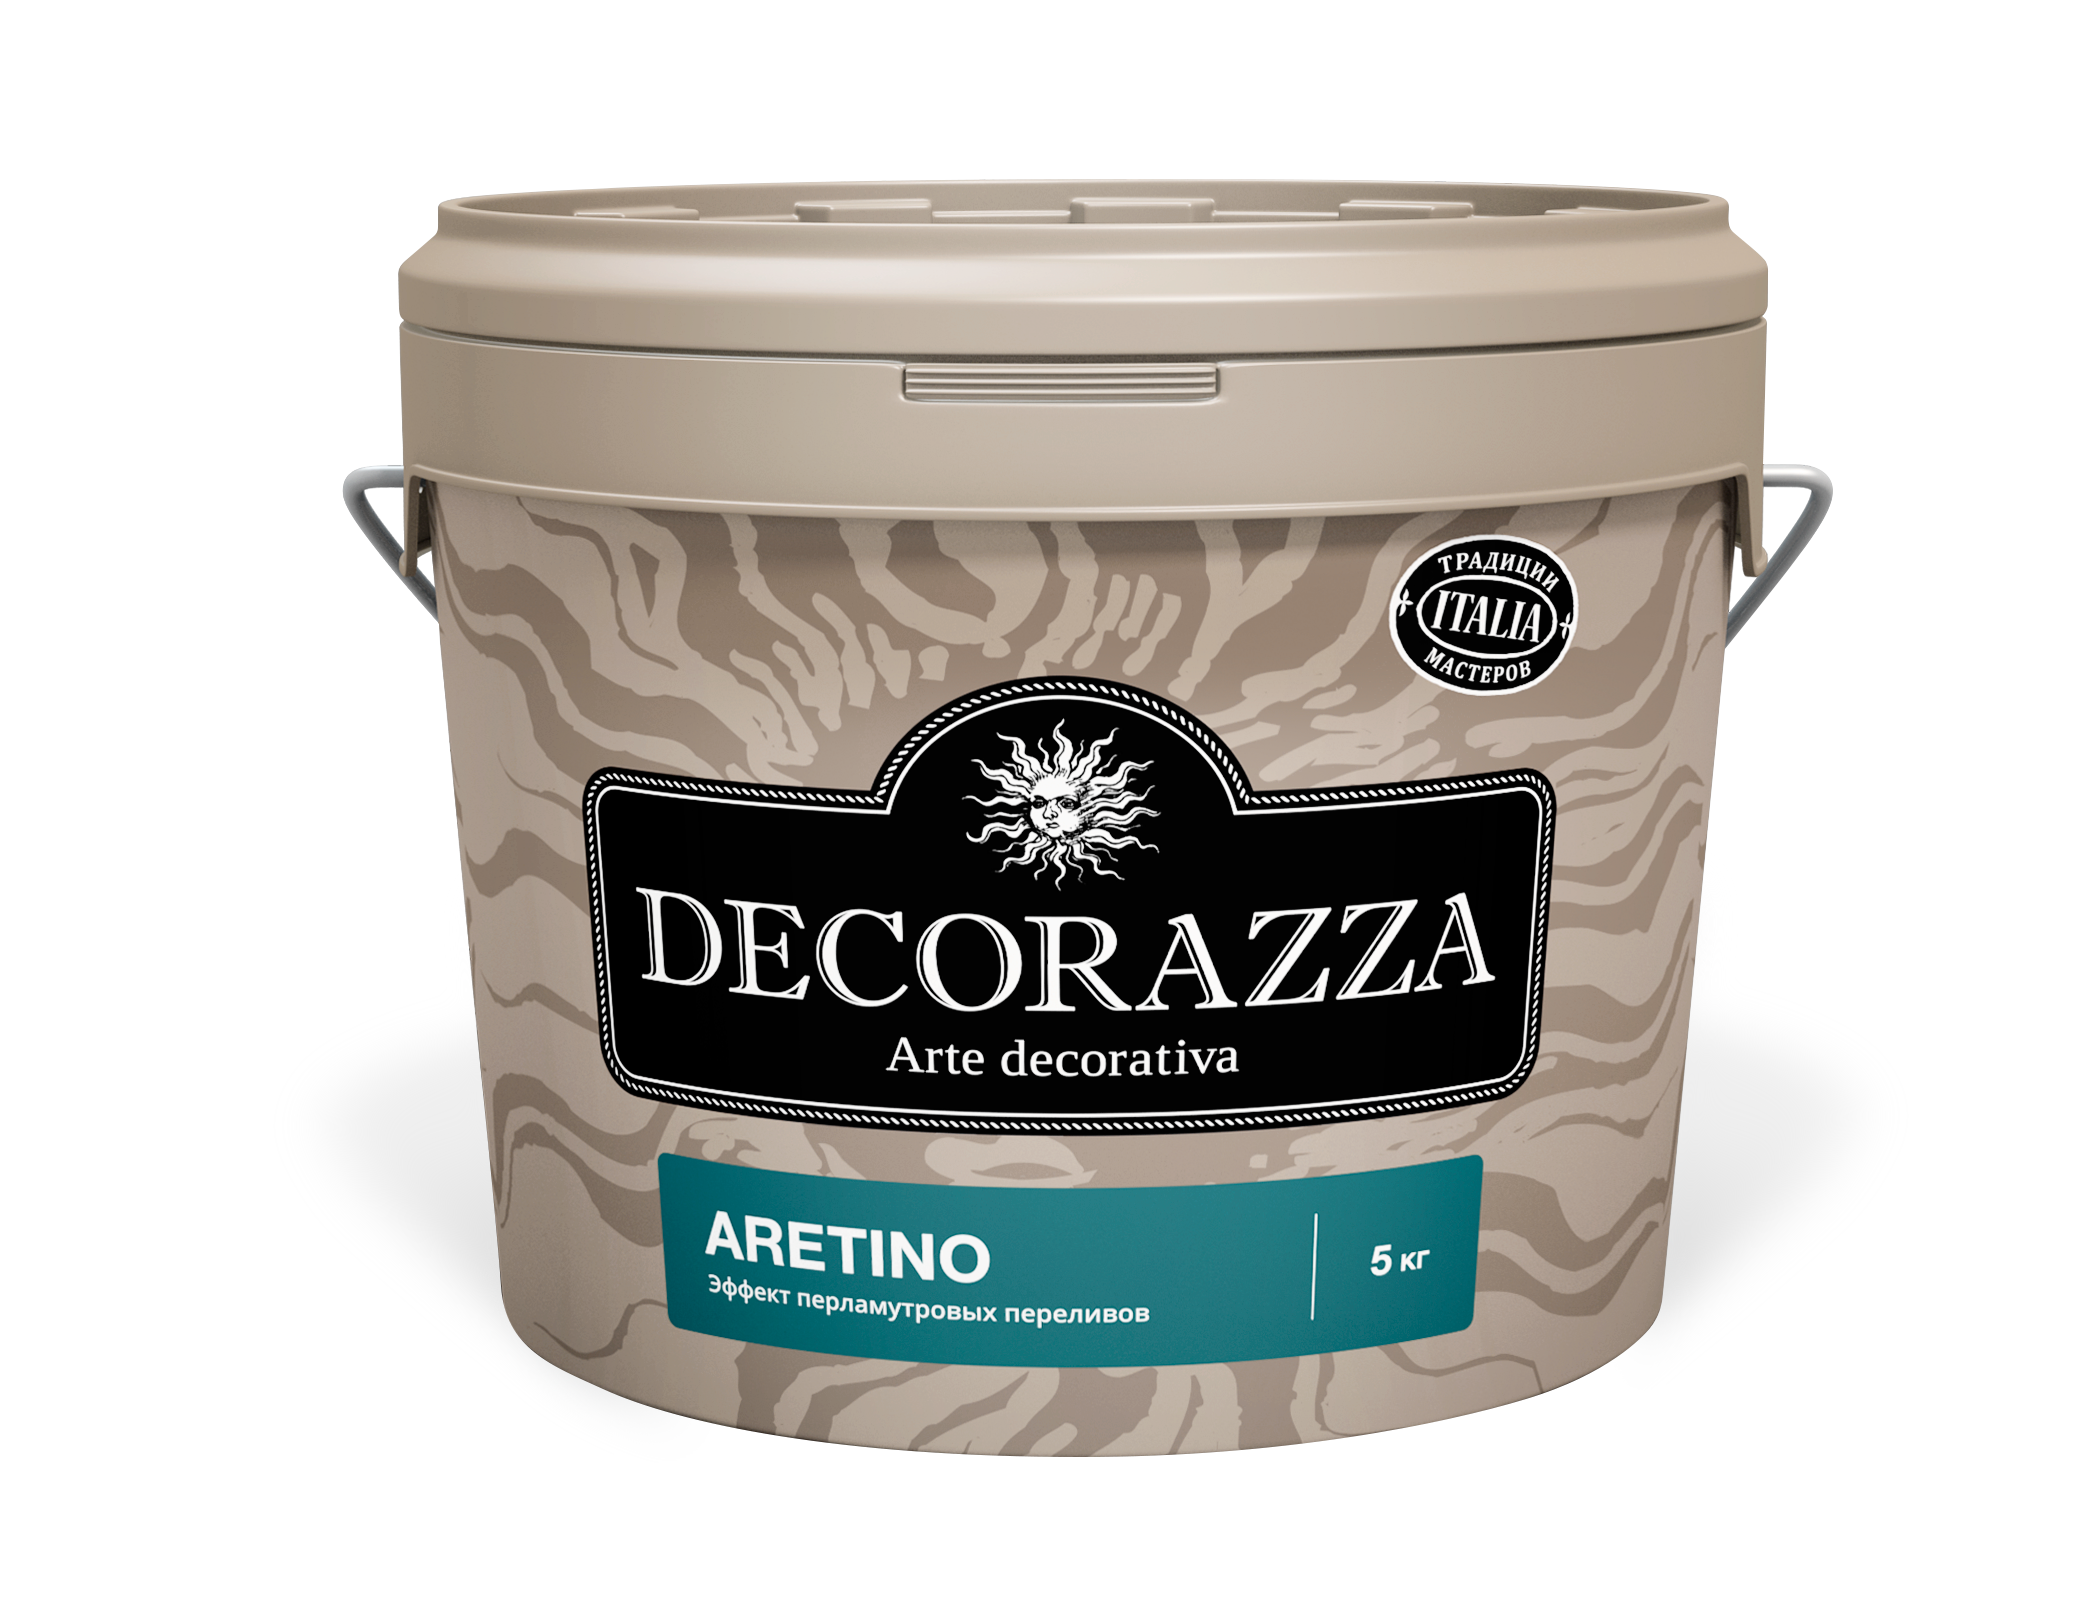 Decorazza ARETINO / Аретино Декоративная краска с перламутровым эффектом и добавлением мелкофракционного наполнителя 1кг